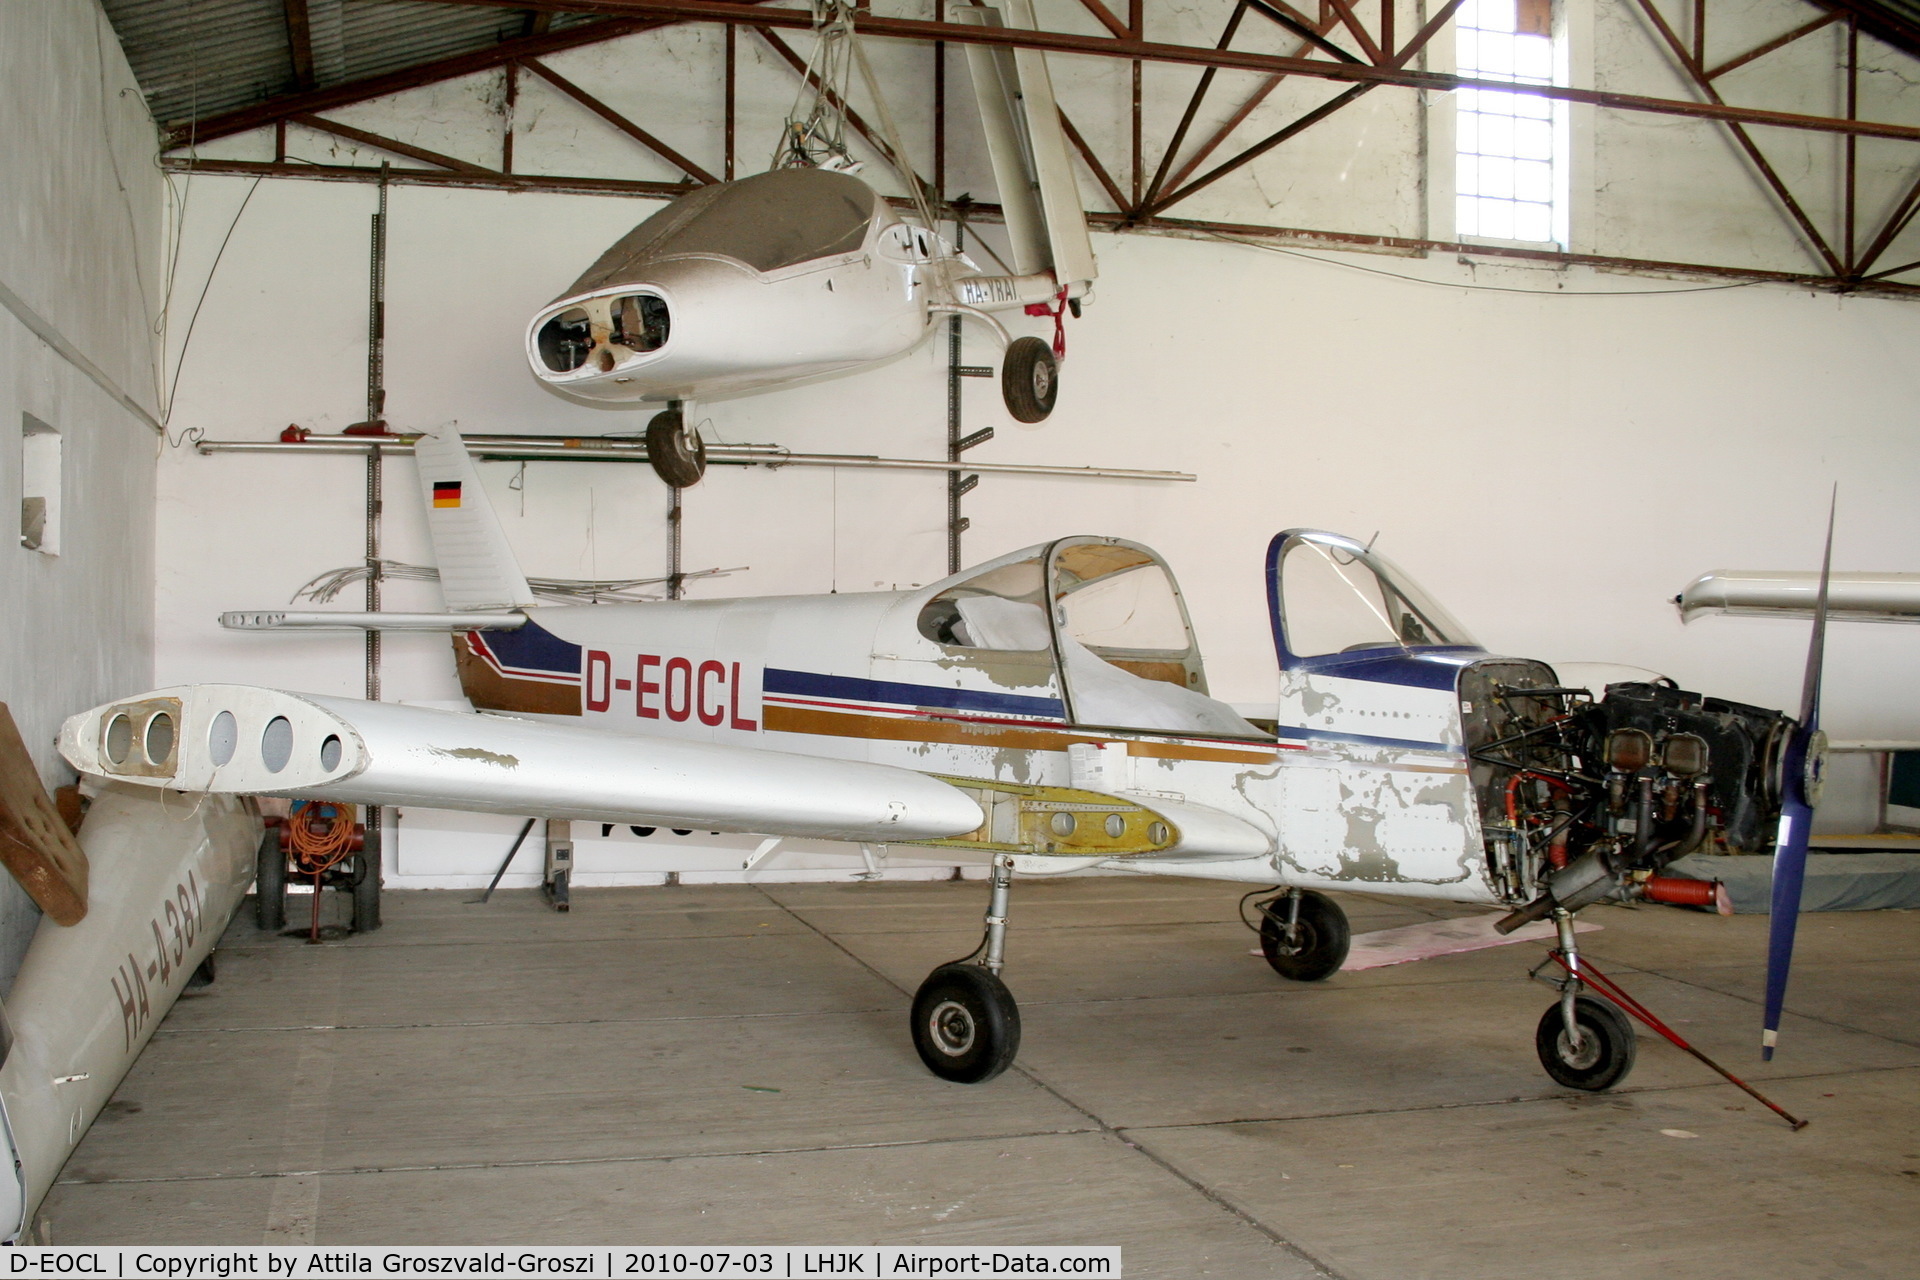 D-EOCL, 1971 Fuji FA-200-160 Aero Subaru C/N 149, Jakabszállás Airport, Hungary - Hangar.